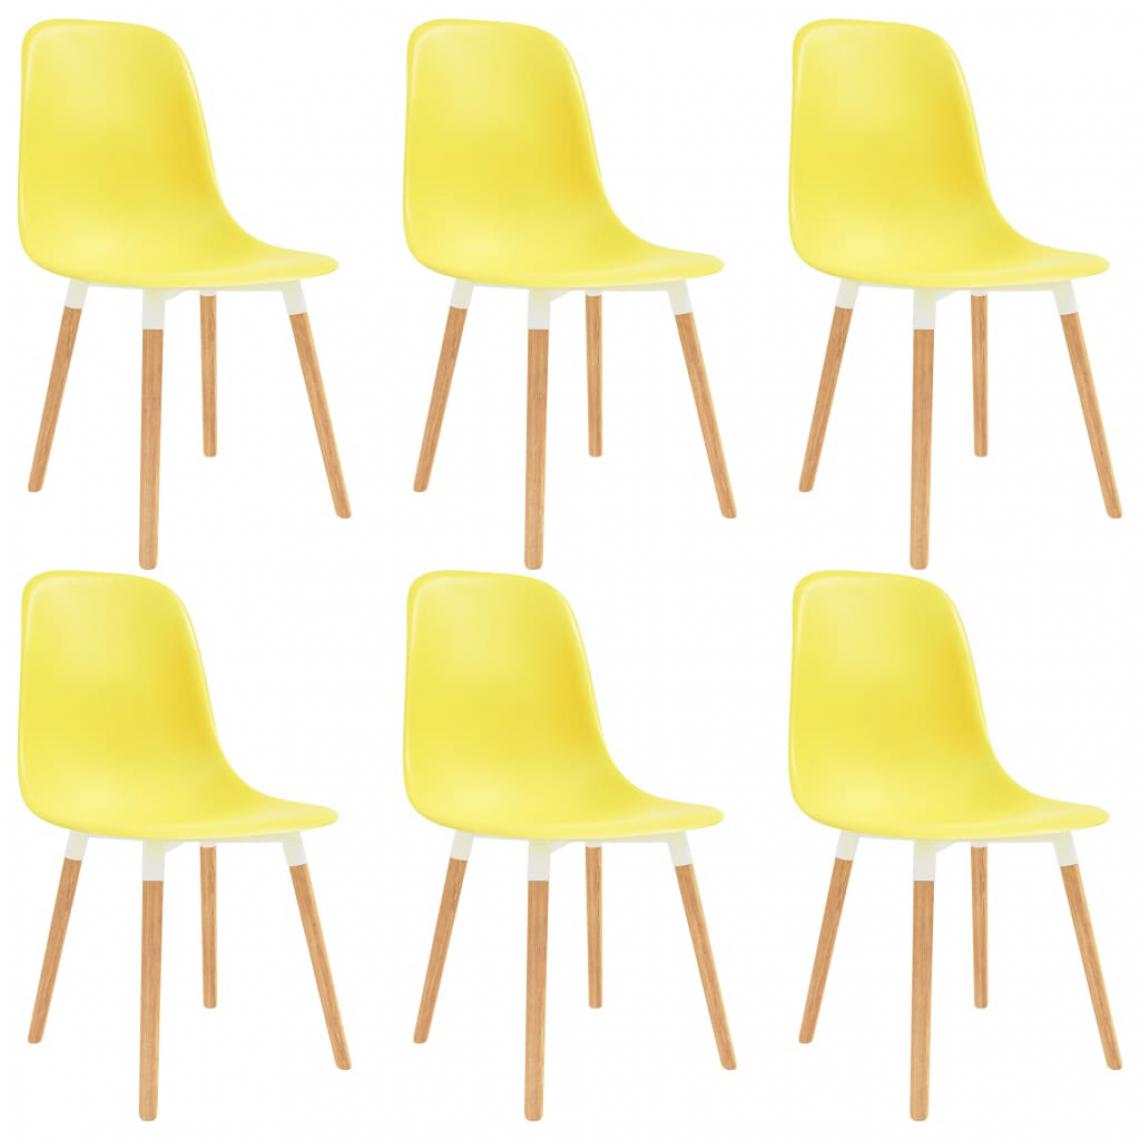 Chunhelife - Chunhelife Chaises de salle à manger 6 pcs Jaune Plastique - Chaises